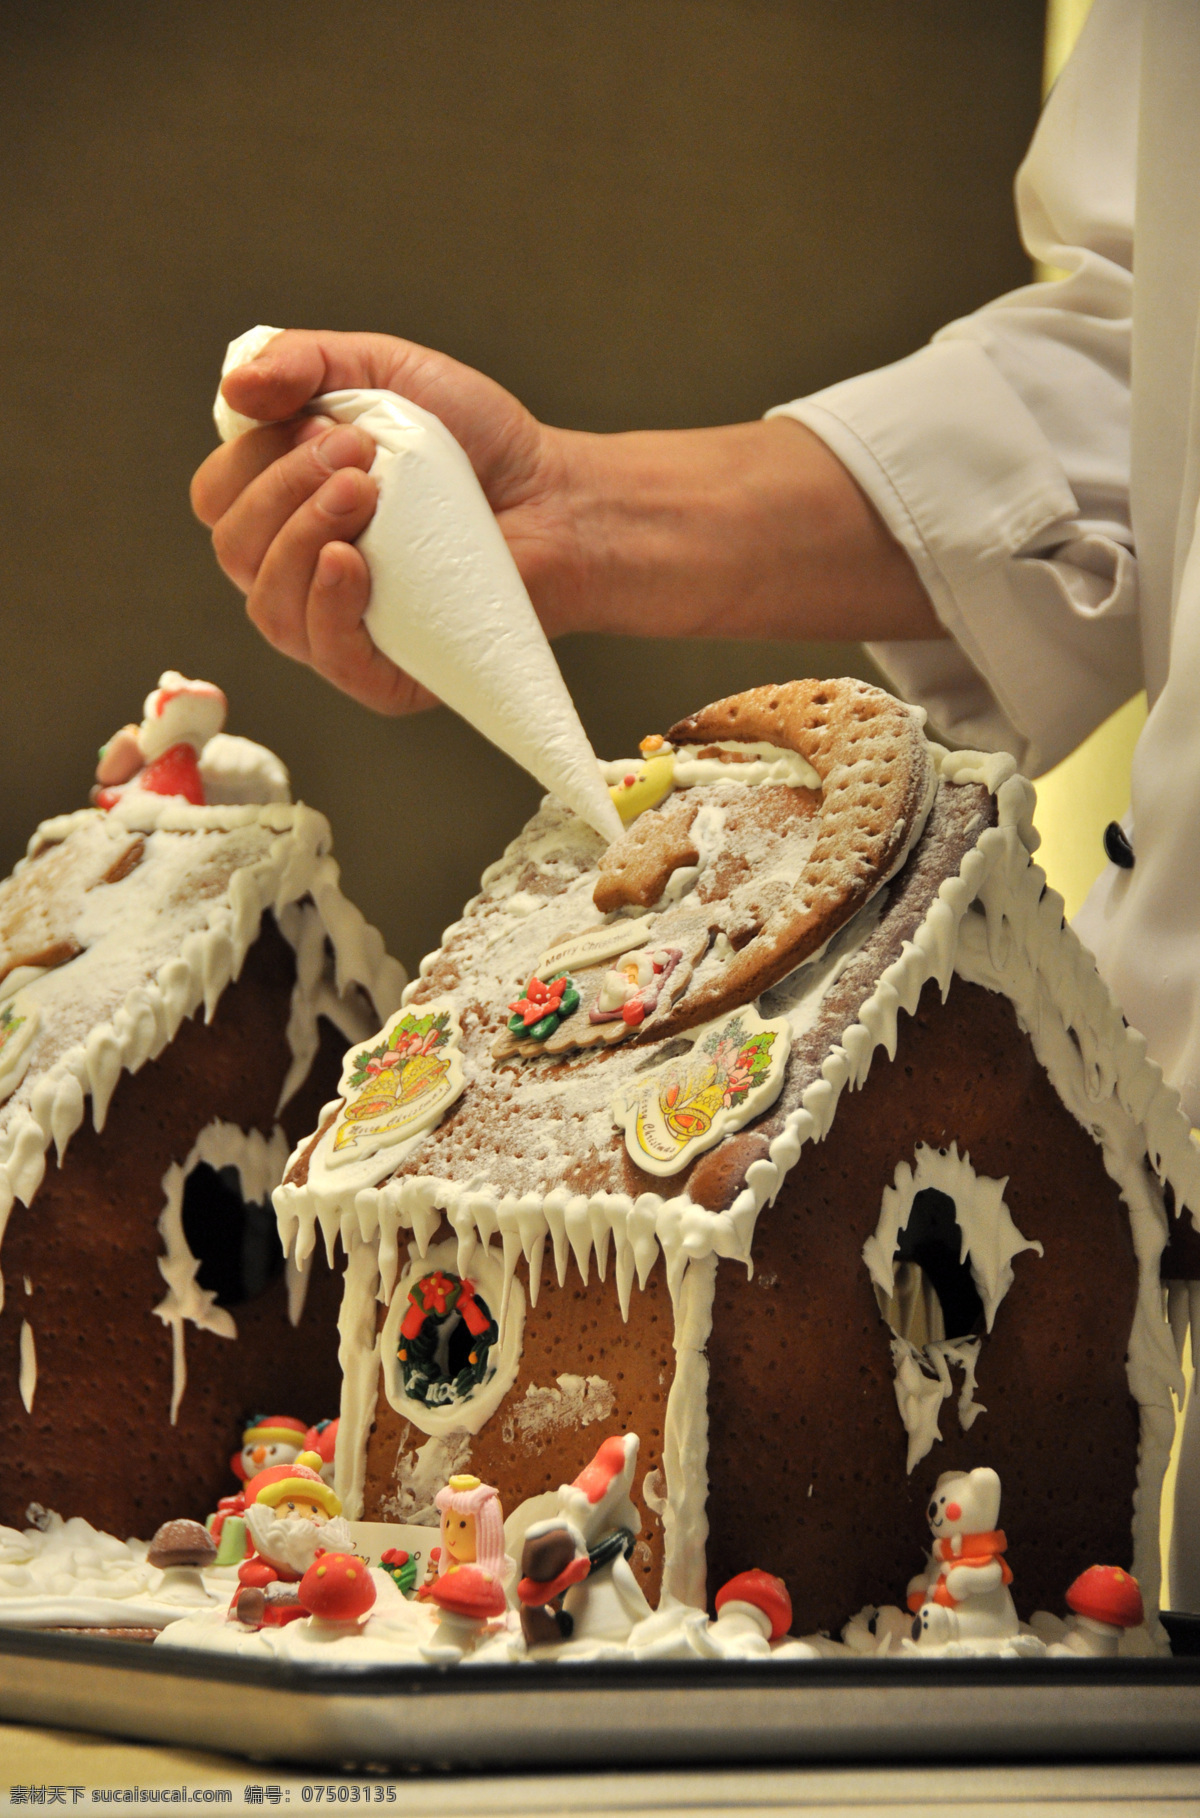 制作姜饼屋 圣诞 姜饼屋 蛋糕 糕点 饼屋 房子 巧克力 西餐美食 餐饮美食